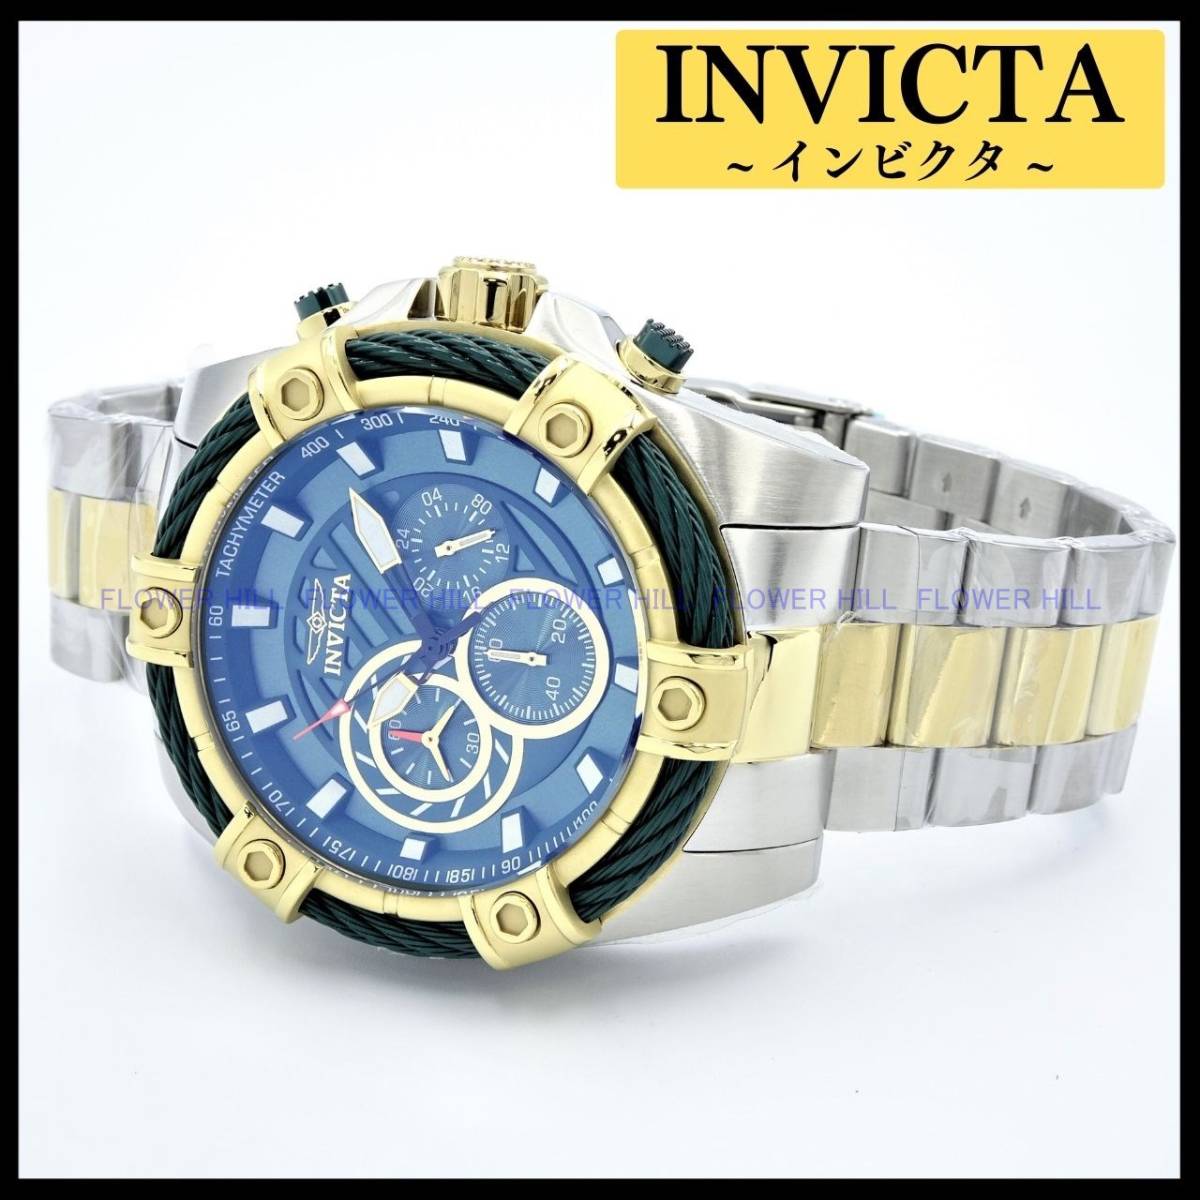 【新品・送料無料】インビクタ INVICTA 腕時計 ボルト Bolt 25519 クォーツ クロノグラフ メタルバンド アナログ 大人気シリーズ